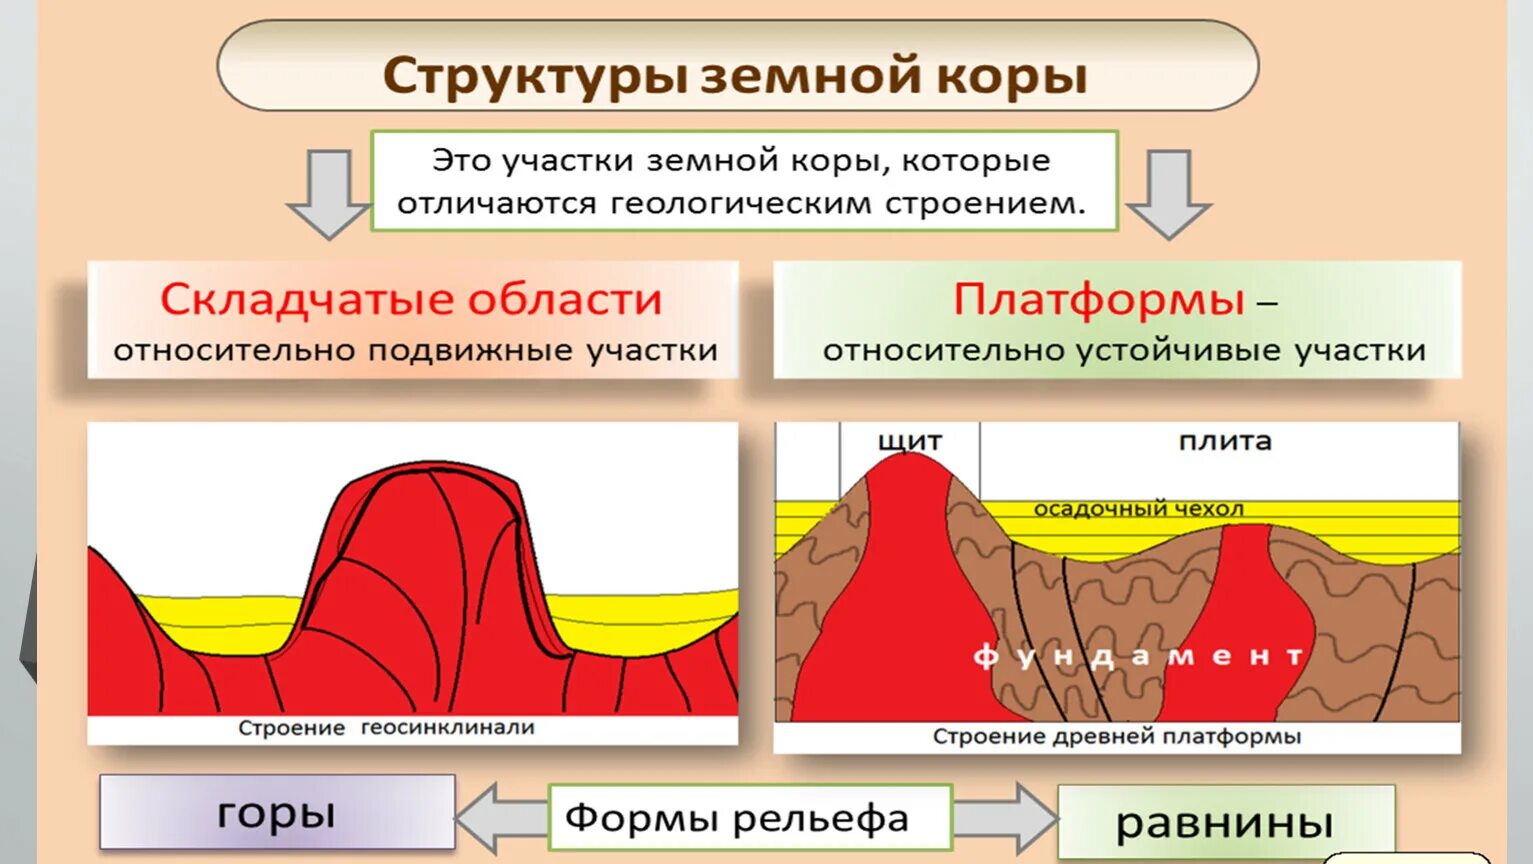 Щит в географии это. Структуры земной коры складчатые области. Структуры земной коры платформы. Основные тектонические структуры. Строение складчатой области.